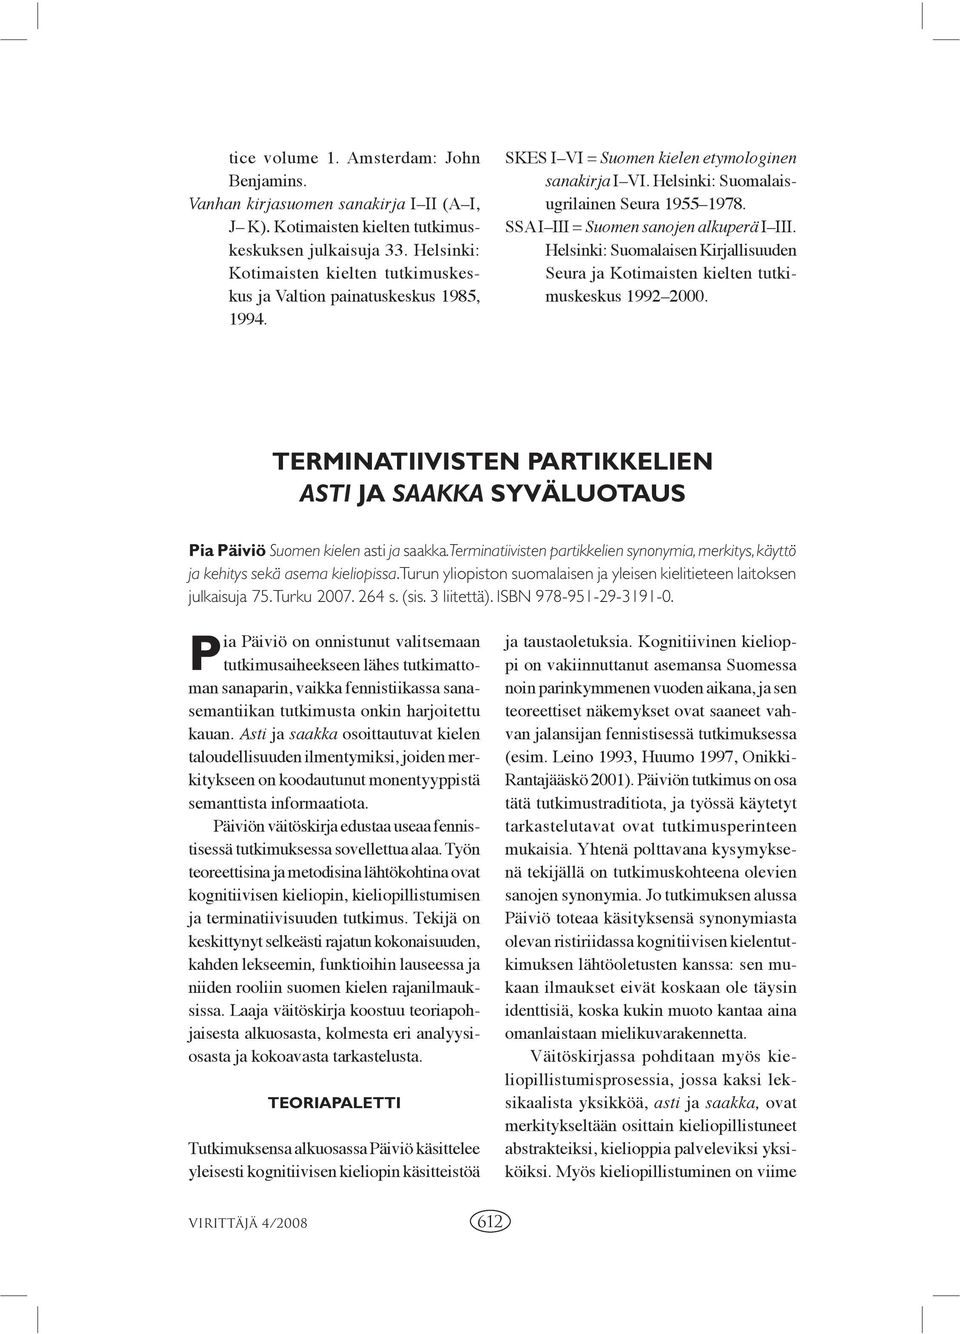 SSA I III = Suomen sanojen alkuperä I III. Helsinki: Suomalaisen Kirjallisuuden Seura ja Kotimaisten kielten tutkimuskeskus 1992 2000.